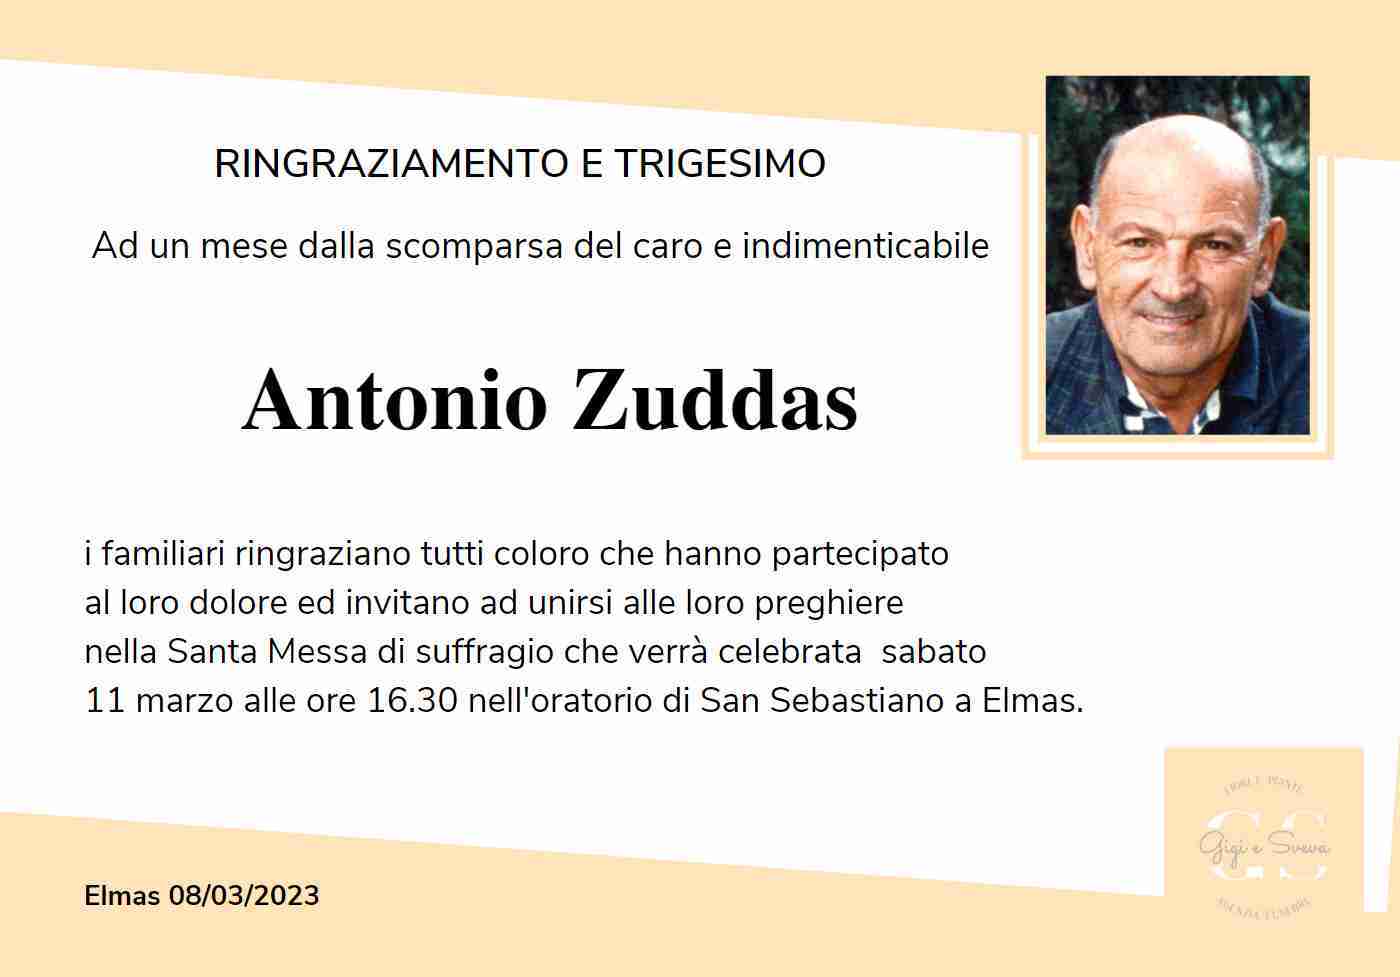 Antonio Zuddas